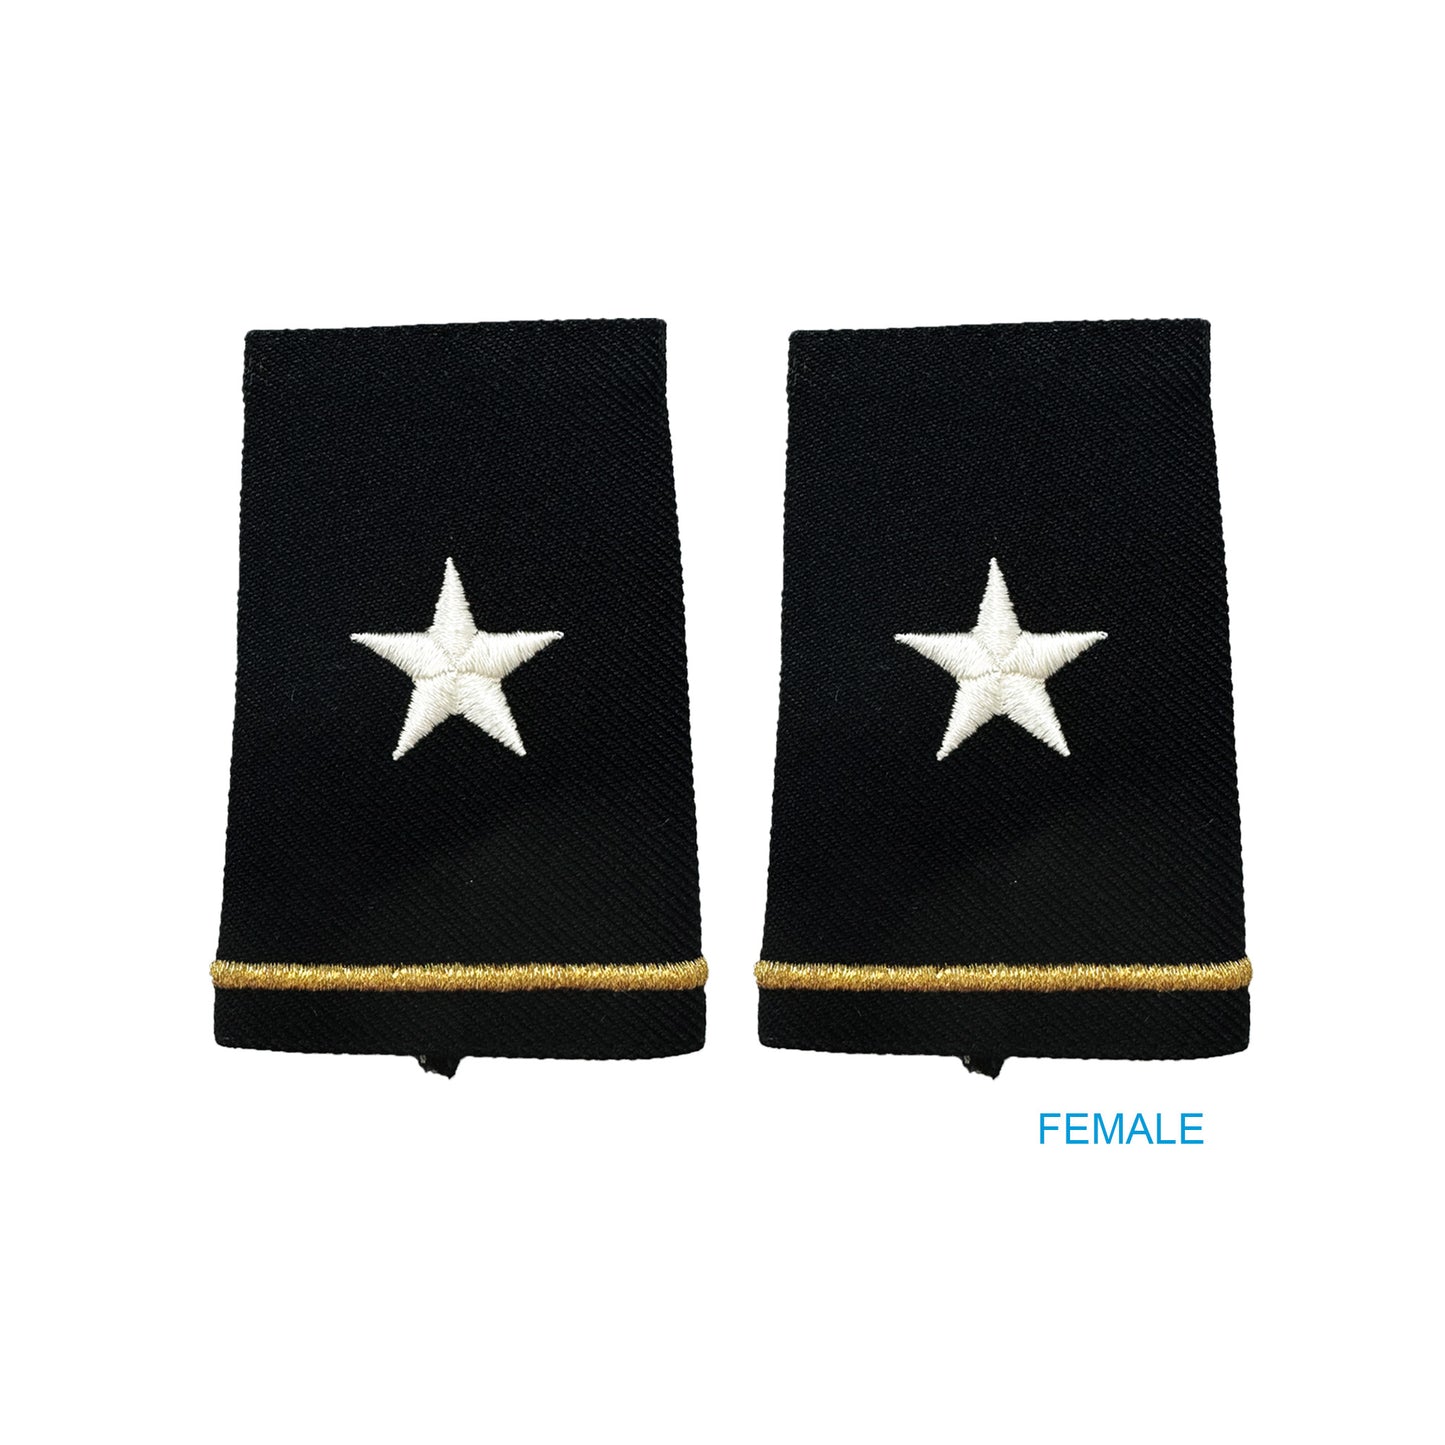 US Army O7 Brigadier General Shoulder Marks - Small/Female